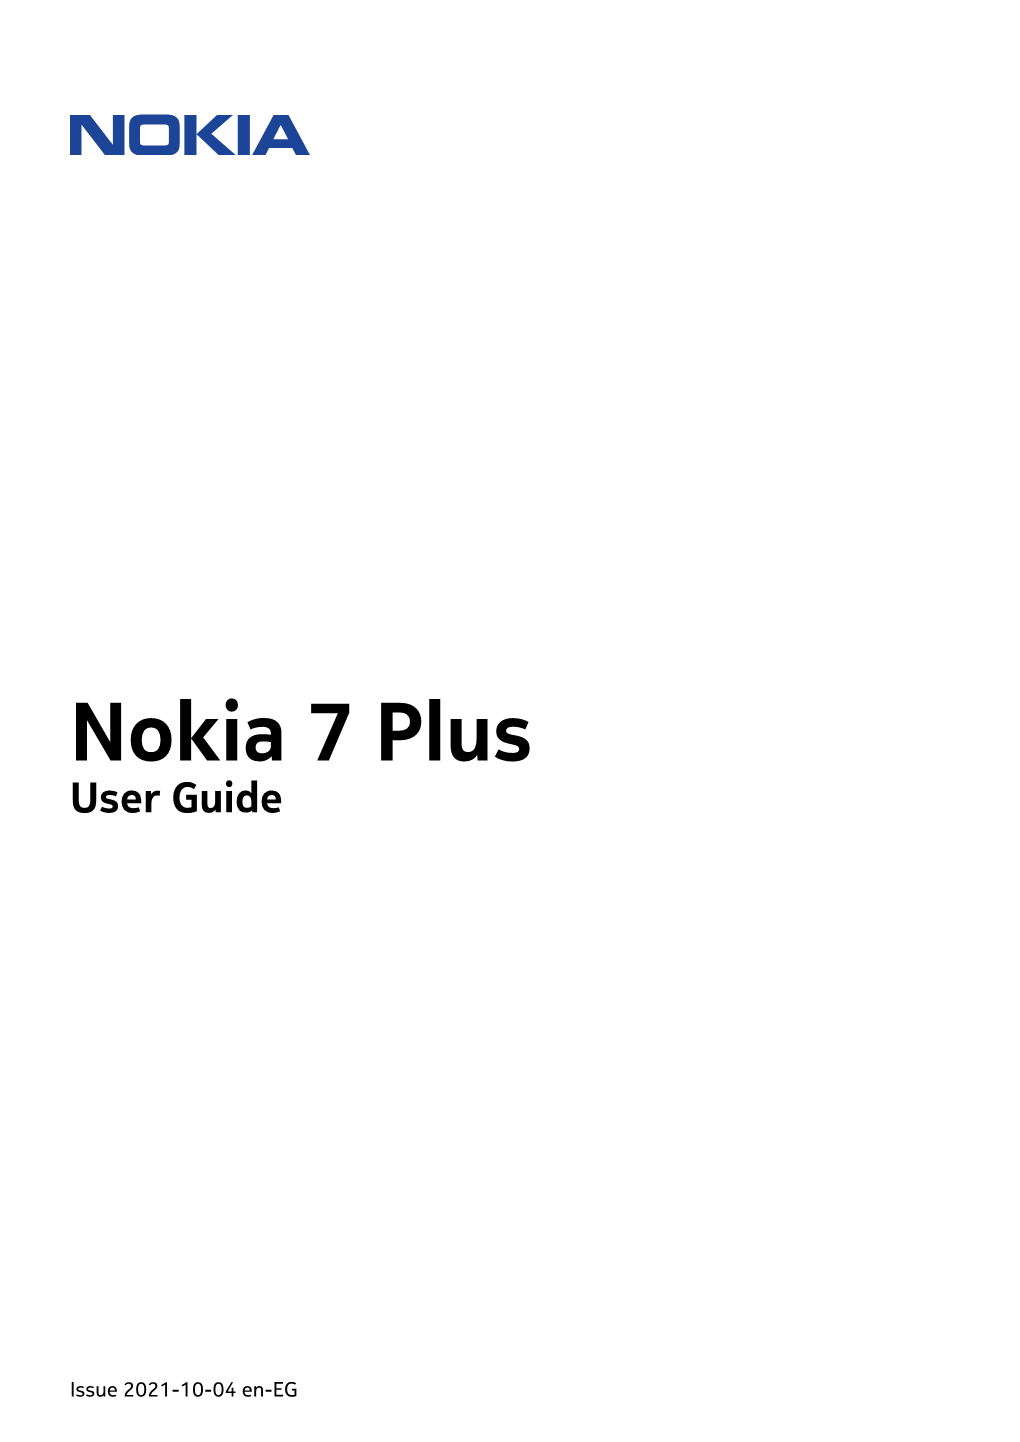 Nokia 7 Plus User Guide